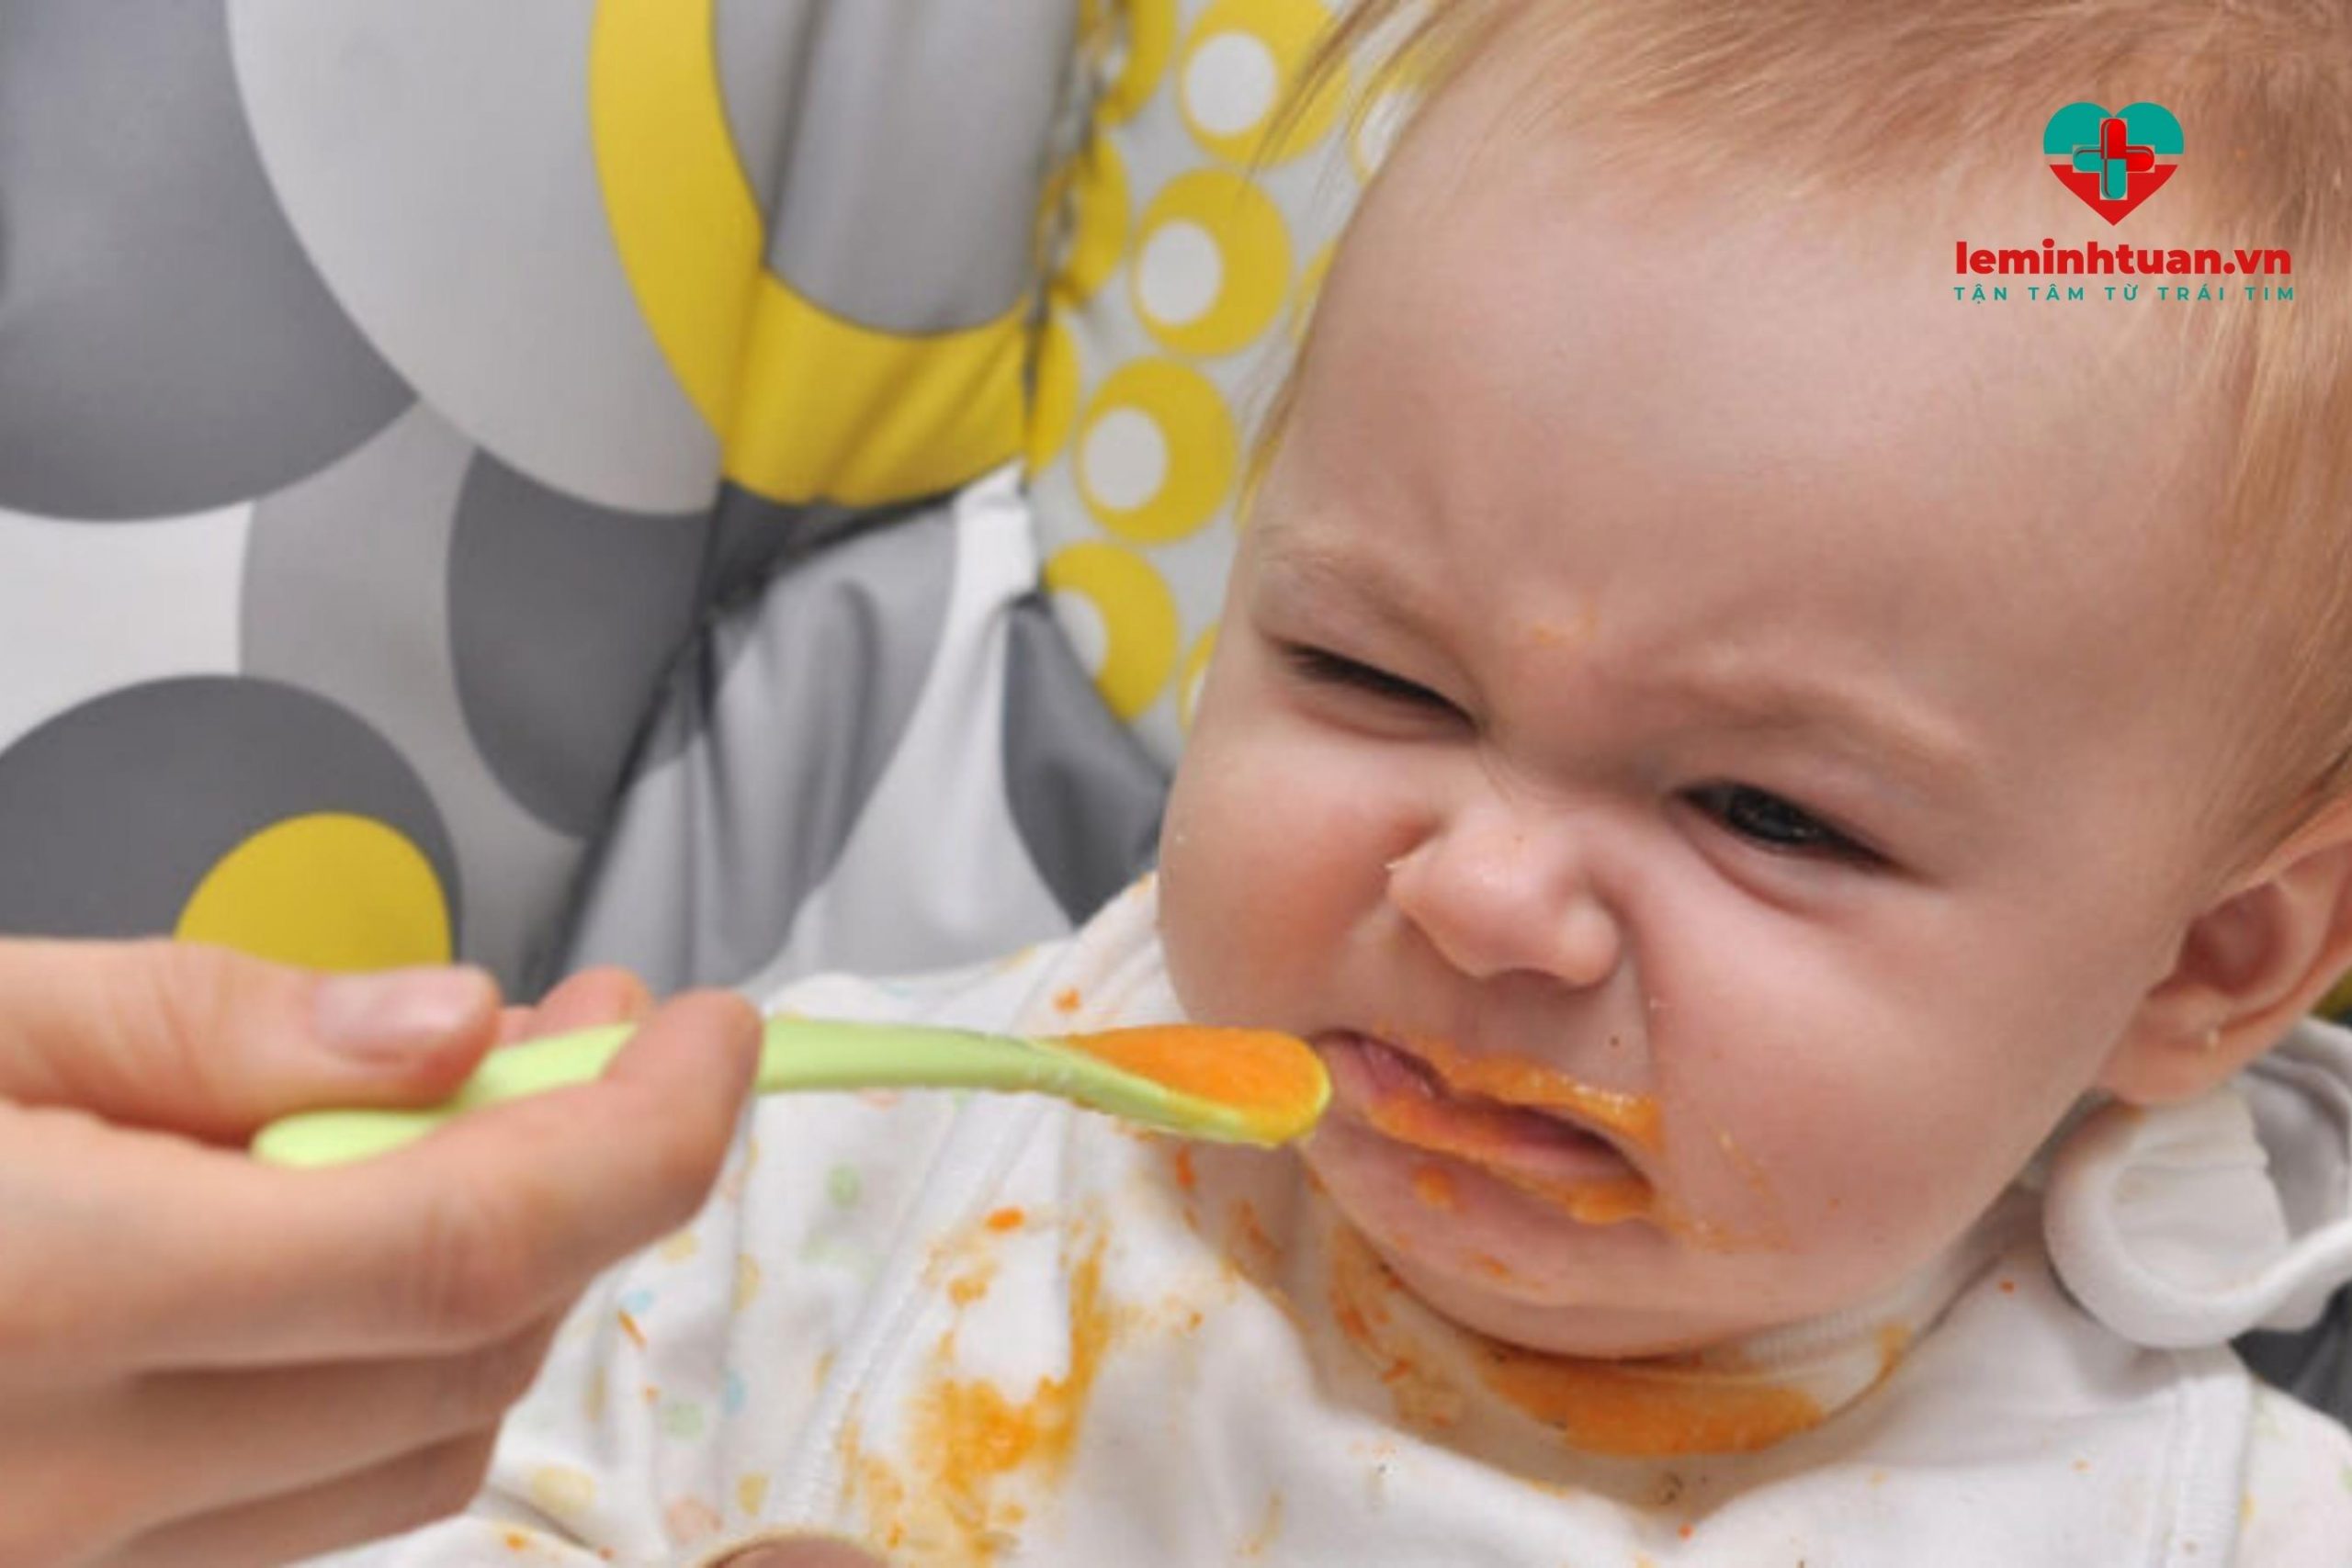 Trẻ biếng ăn chậm tăng cân do cách chế biến món ăn của mẹ chưa hợp lý